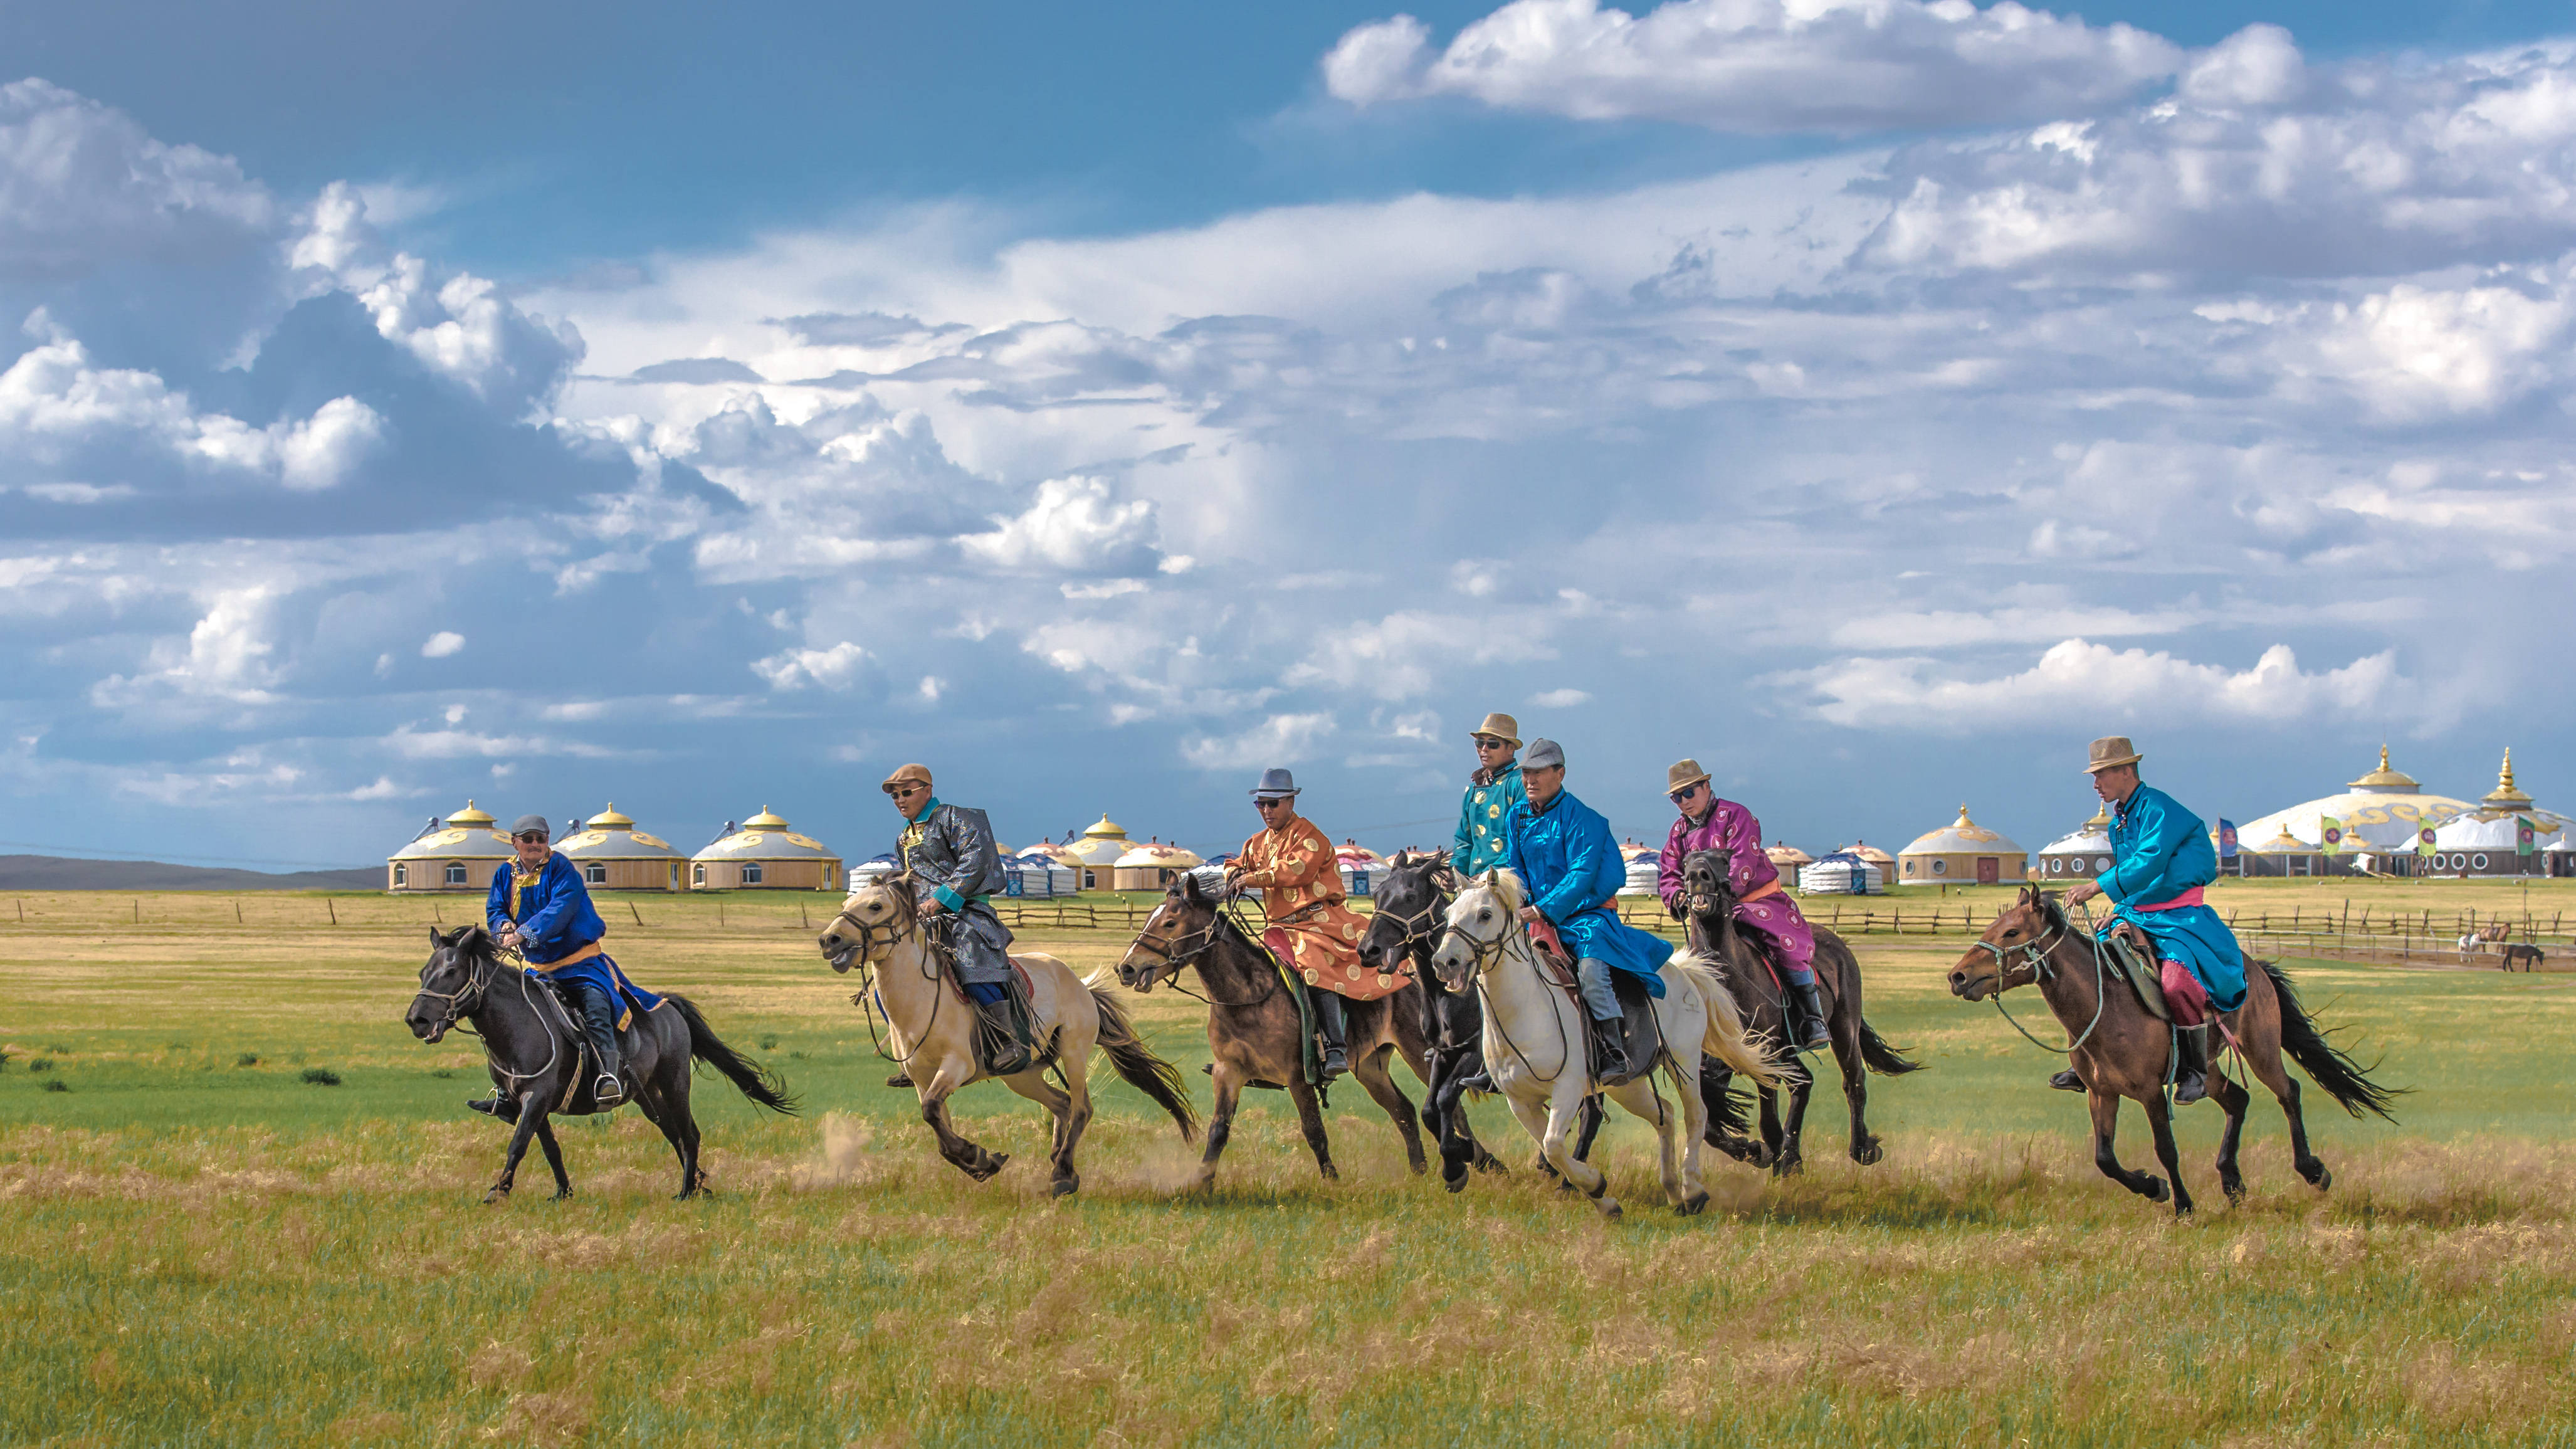 走进天堂般的乌珠穆沁草原,在蒙古汗城体验蒙古人独特